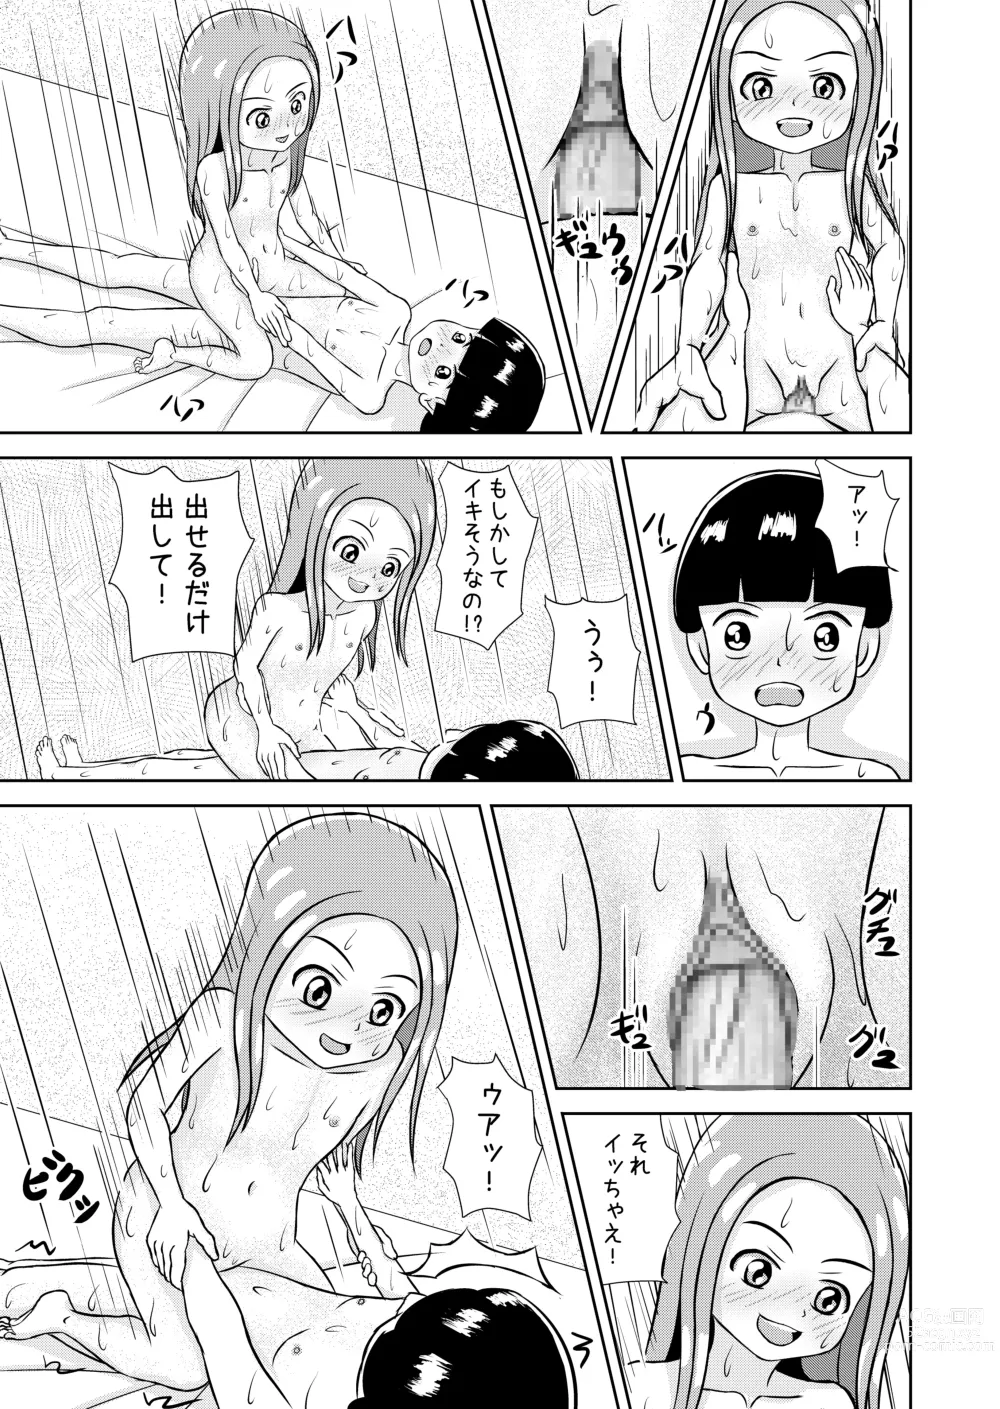 Page 93 of doujinshi Watashi to Dare no Ko?